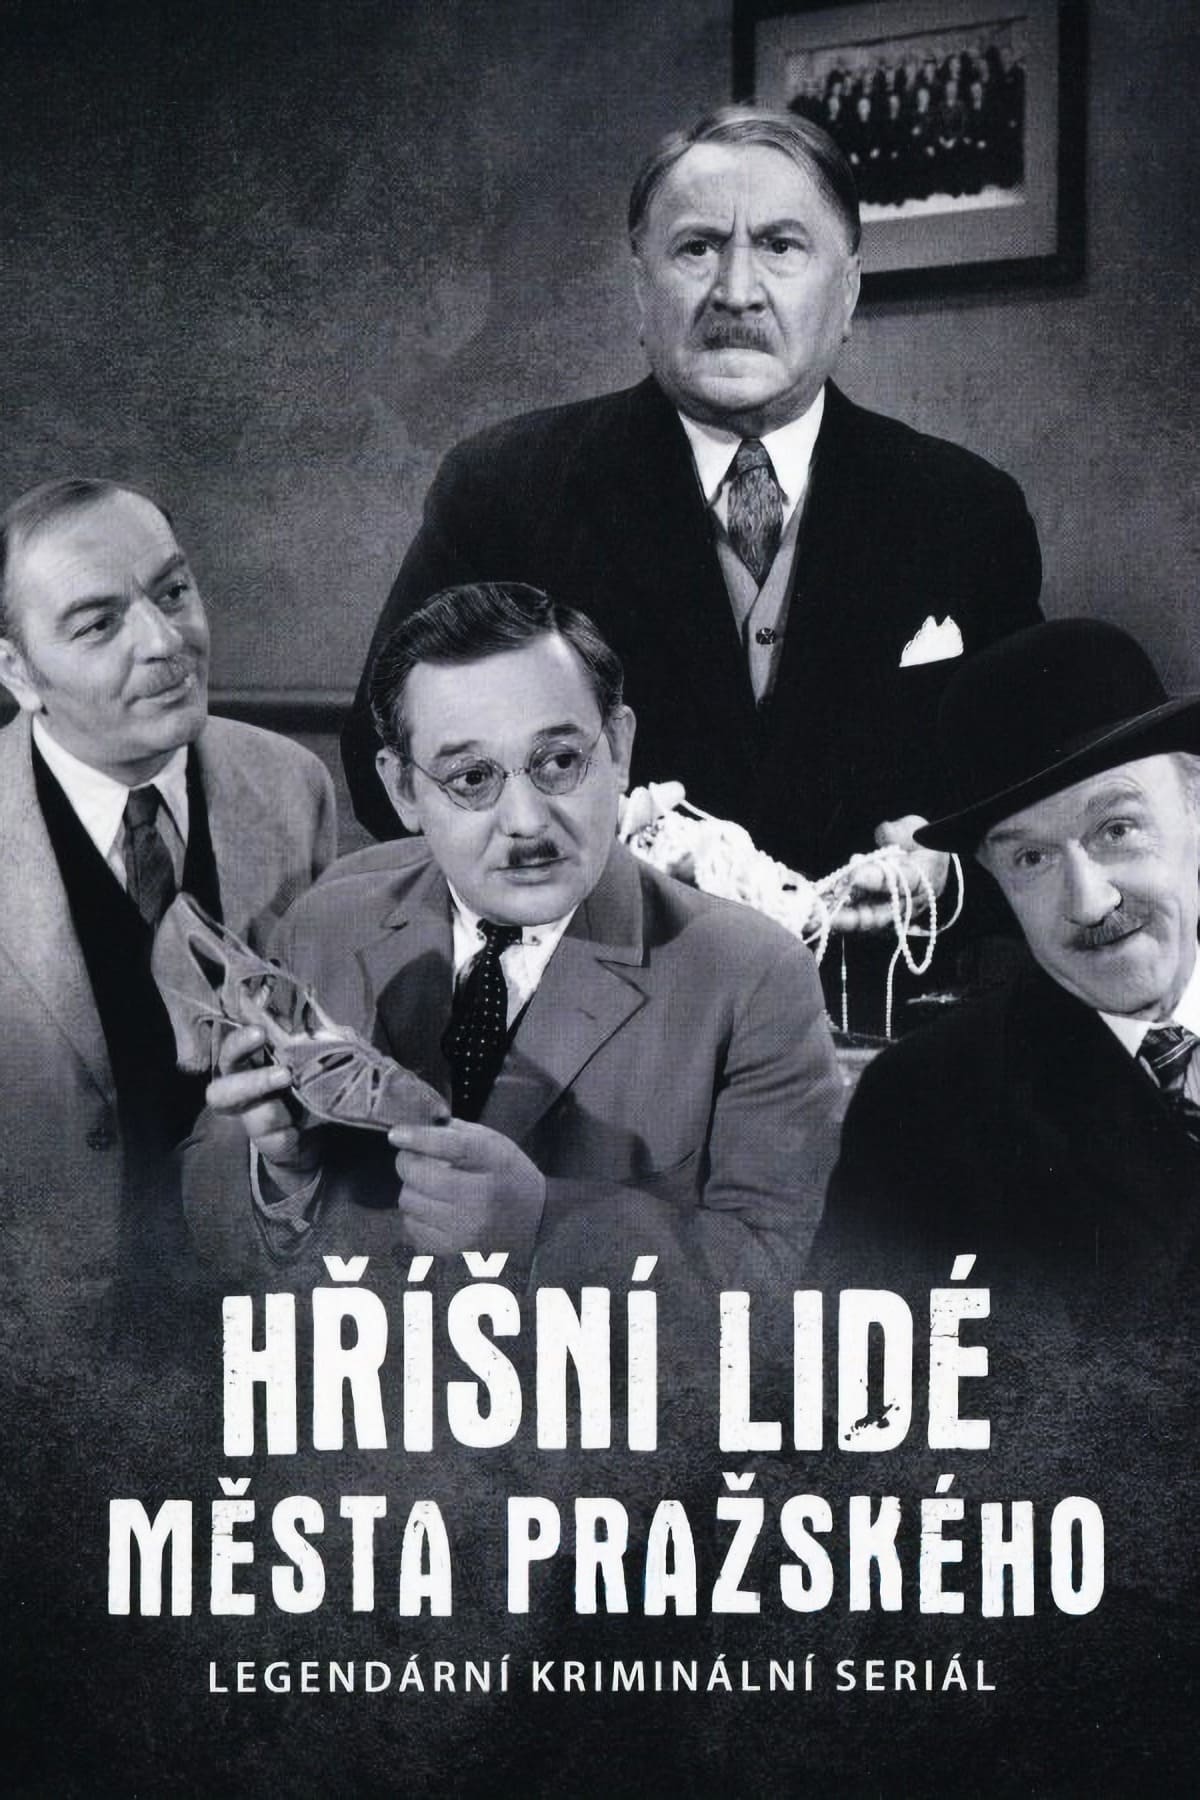 Plakát pro film “Hříšní lidé města pražského”